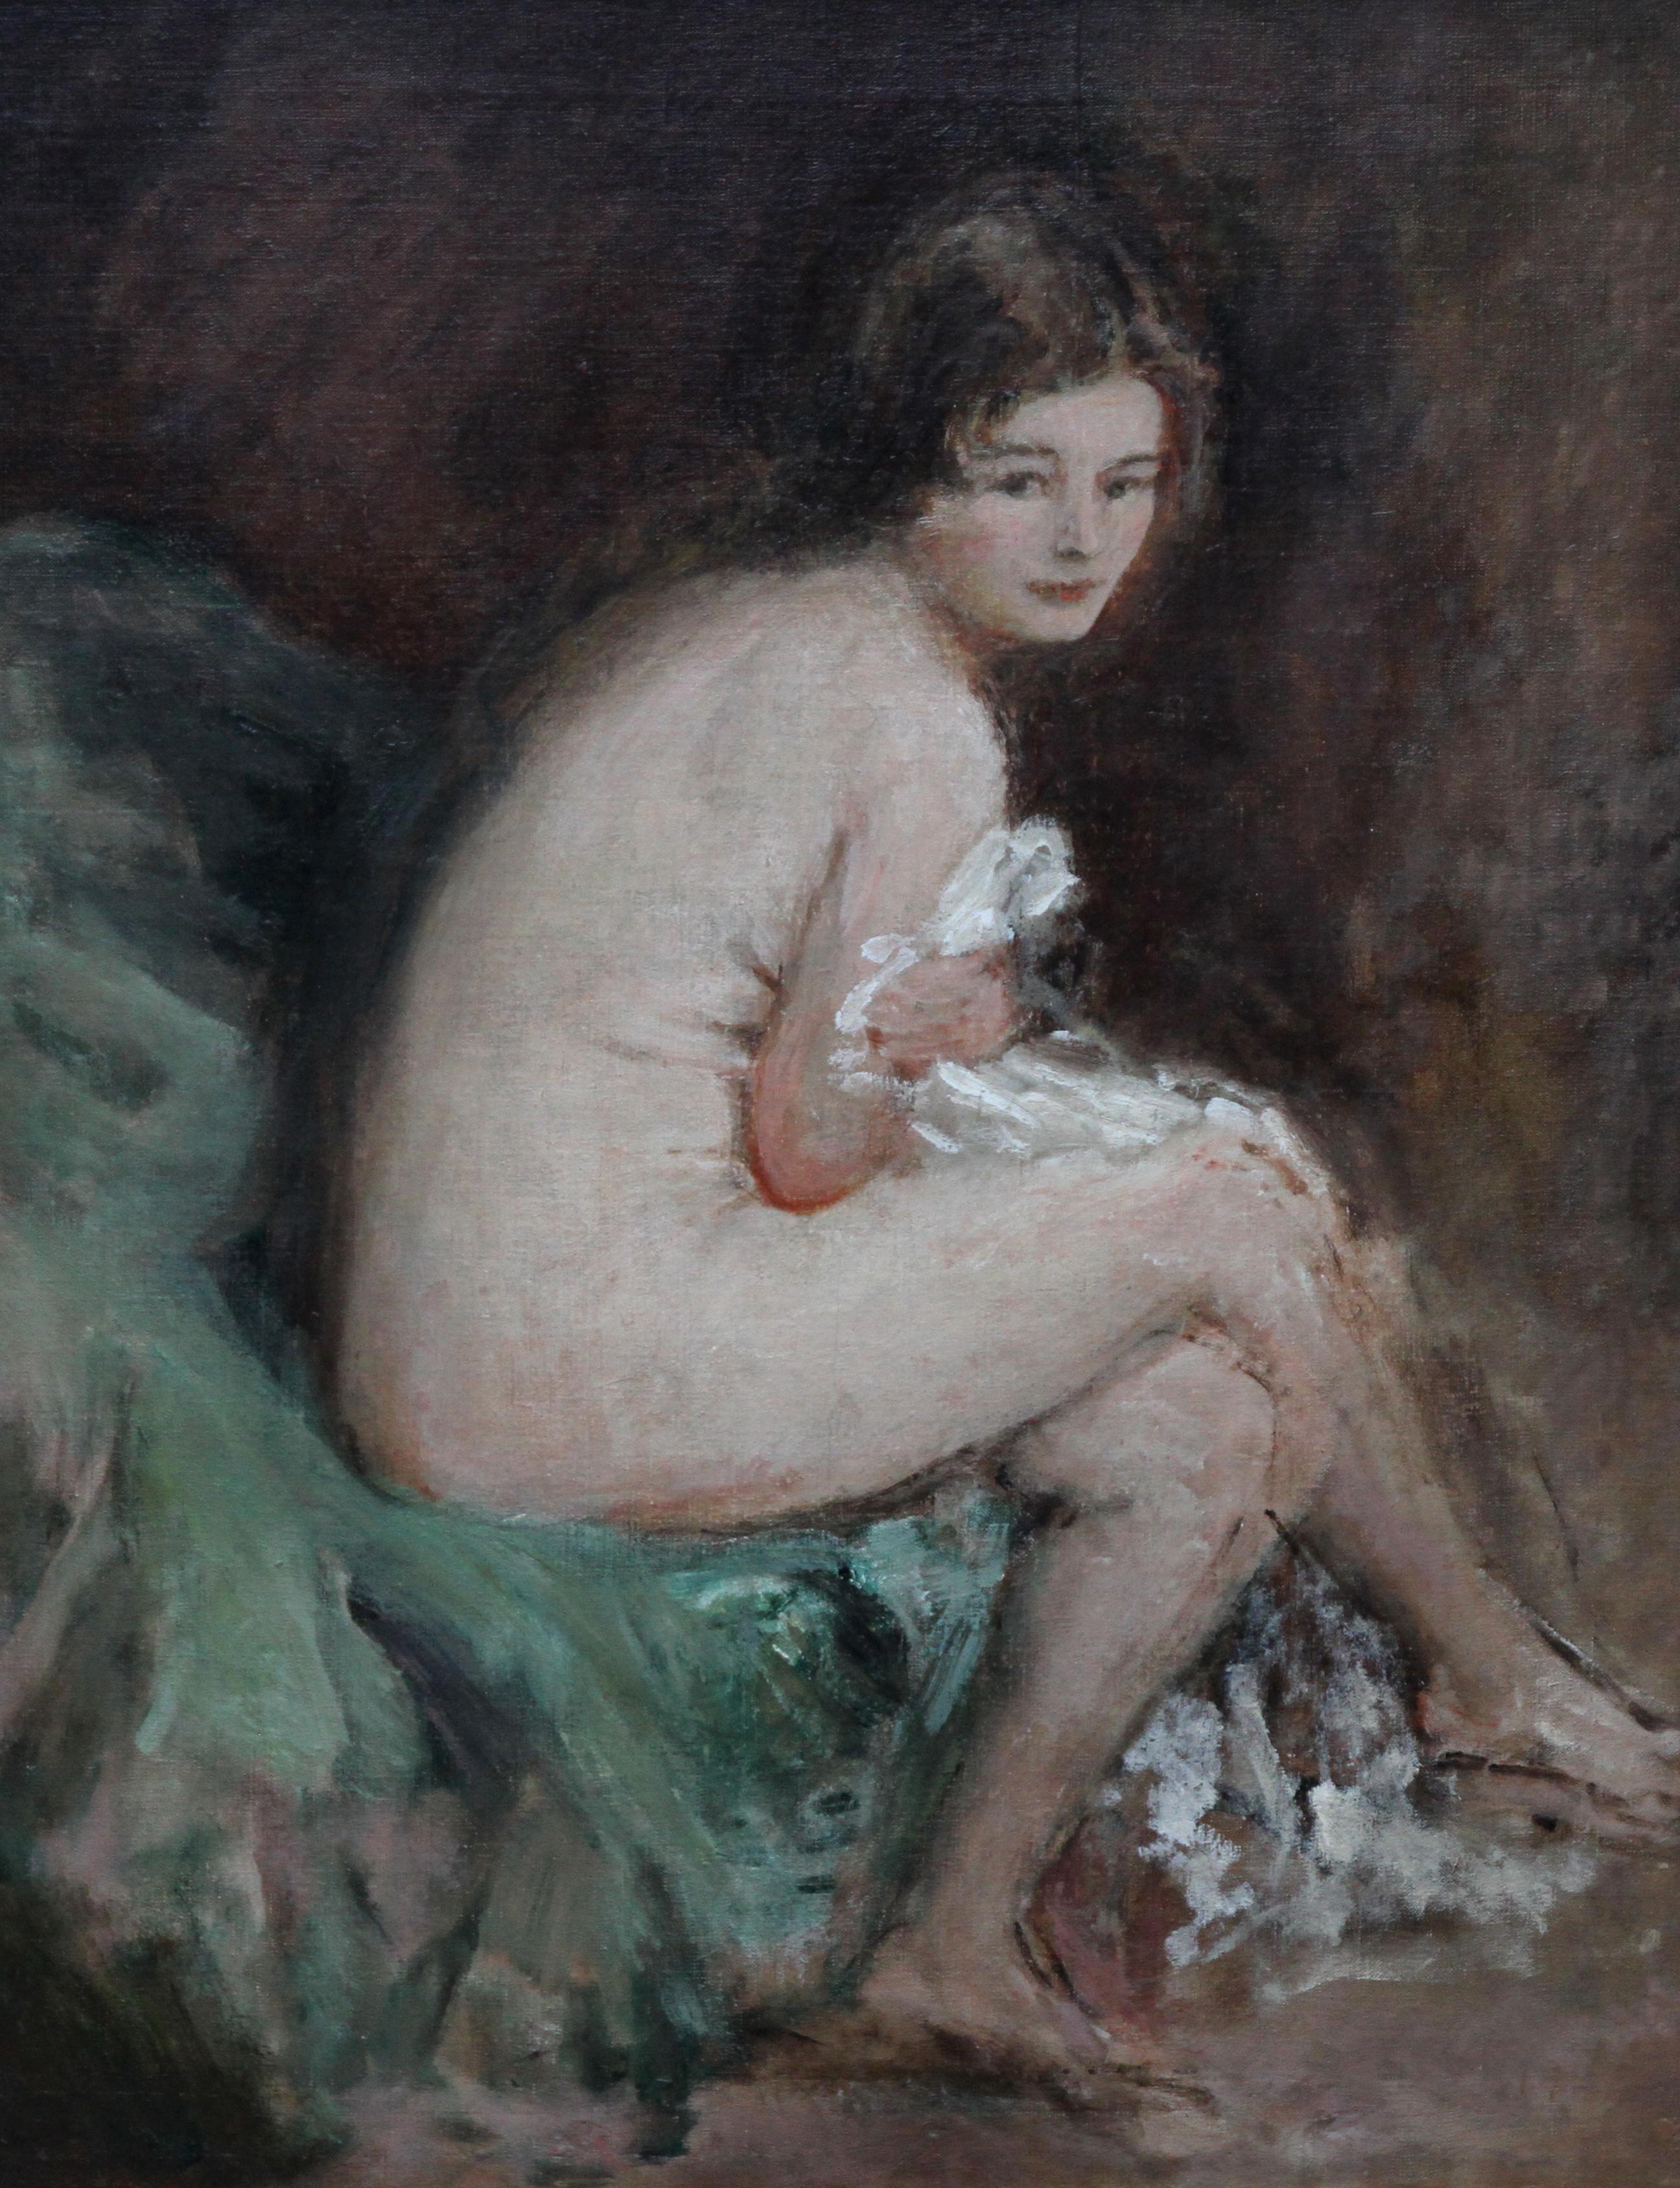 Portrait de femme nue - Susannah - Peinture à l'huile impressionniste britannique des années 20 - Painting de Philip Wilson Steer